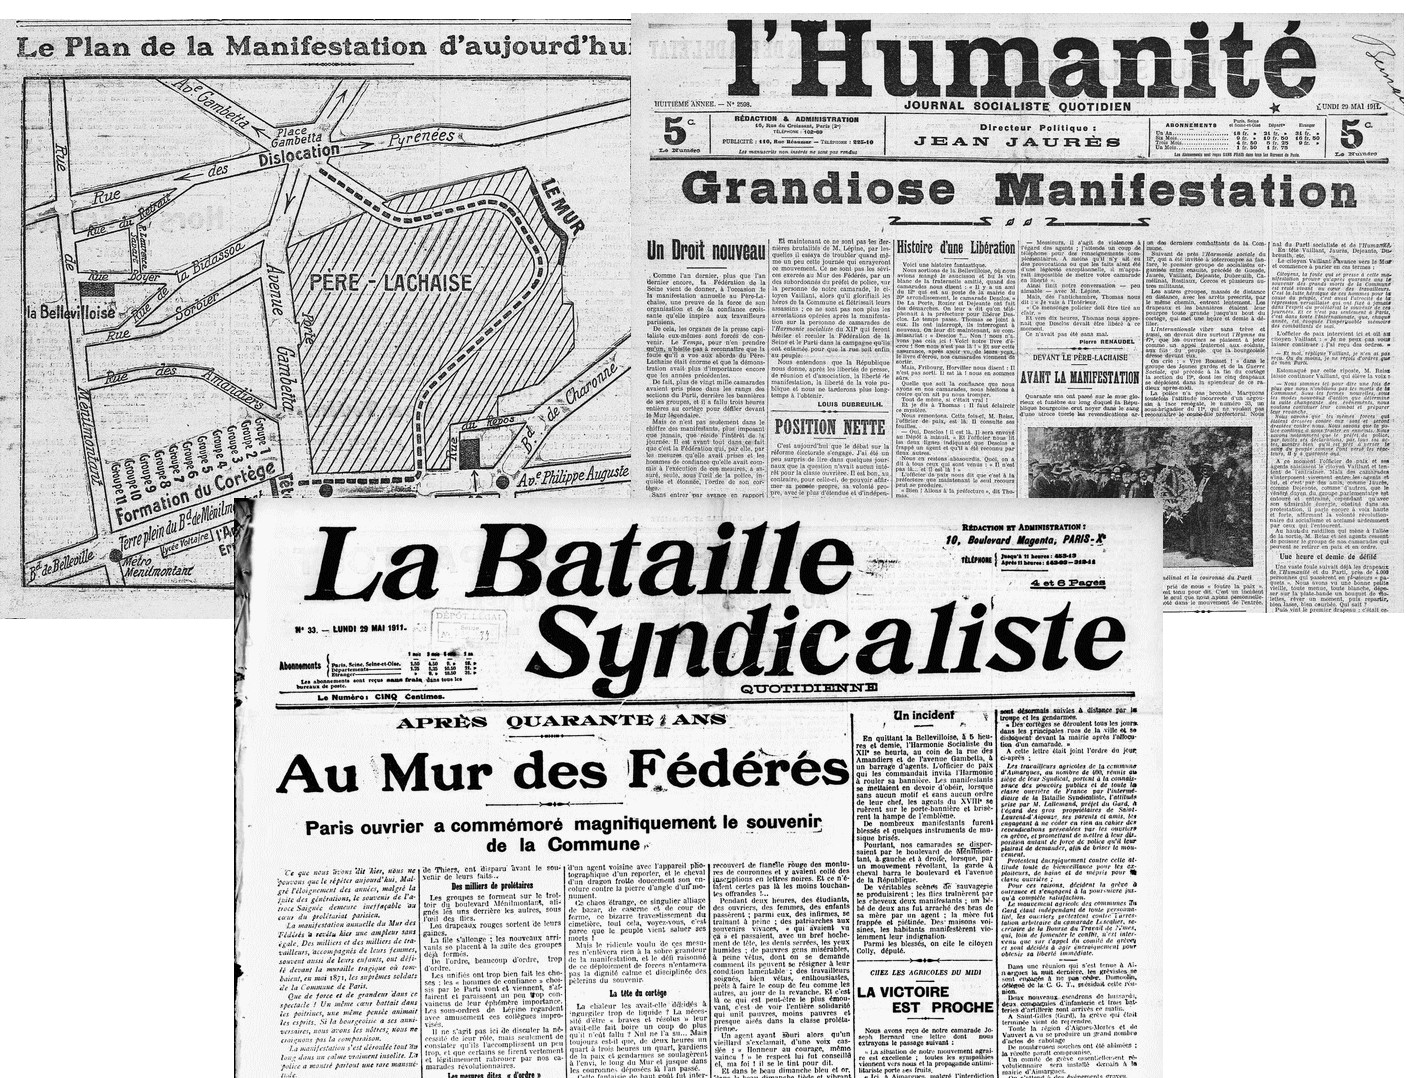 1911 - La presse "rouge" appelle à la "montée au Mur". (Source Gallica - L'Humanité du 28 et 29 mai 1911 et Bataille syndicaliste du 29 mai 1911)